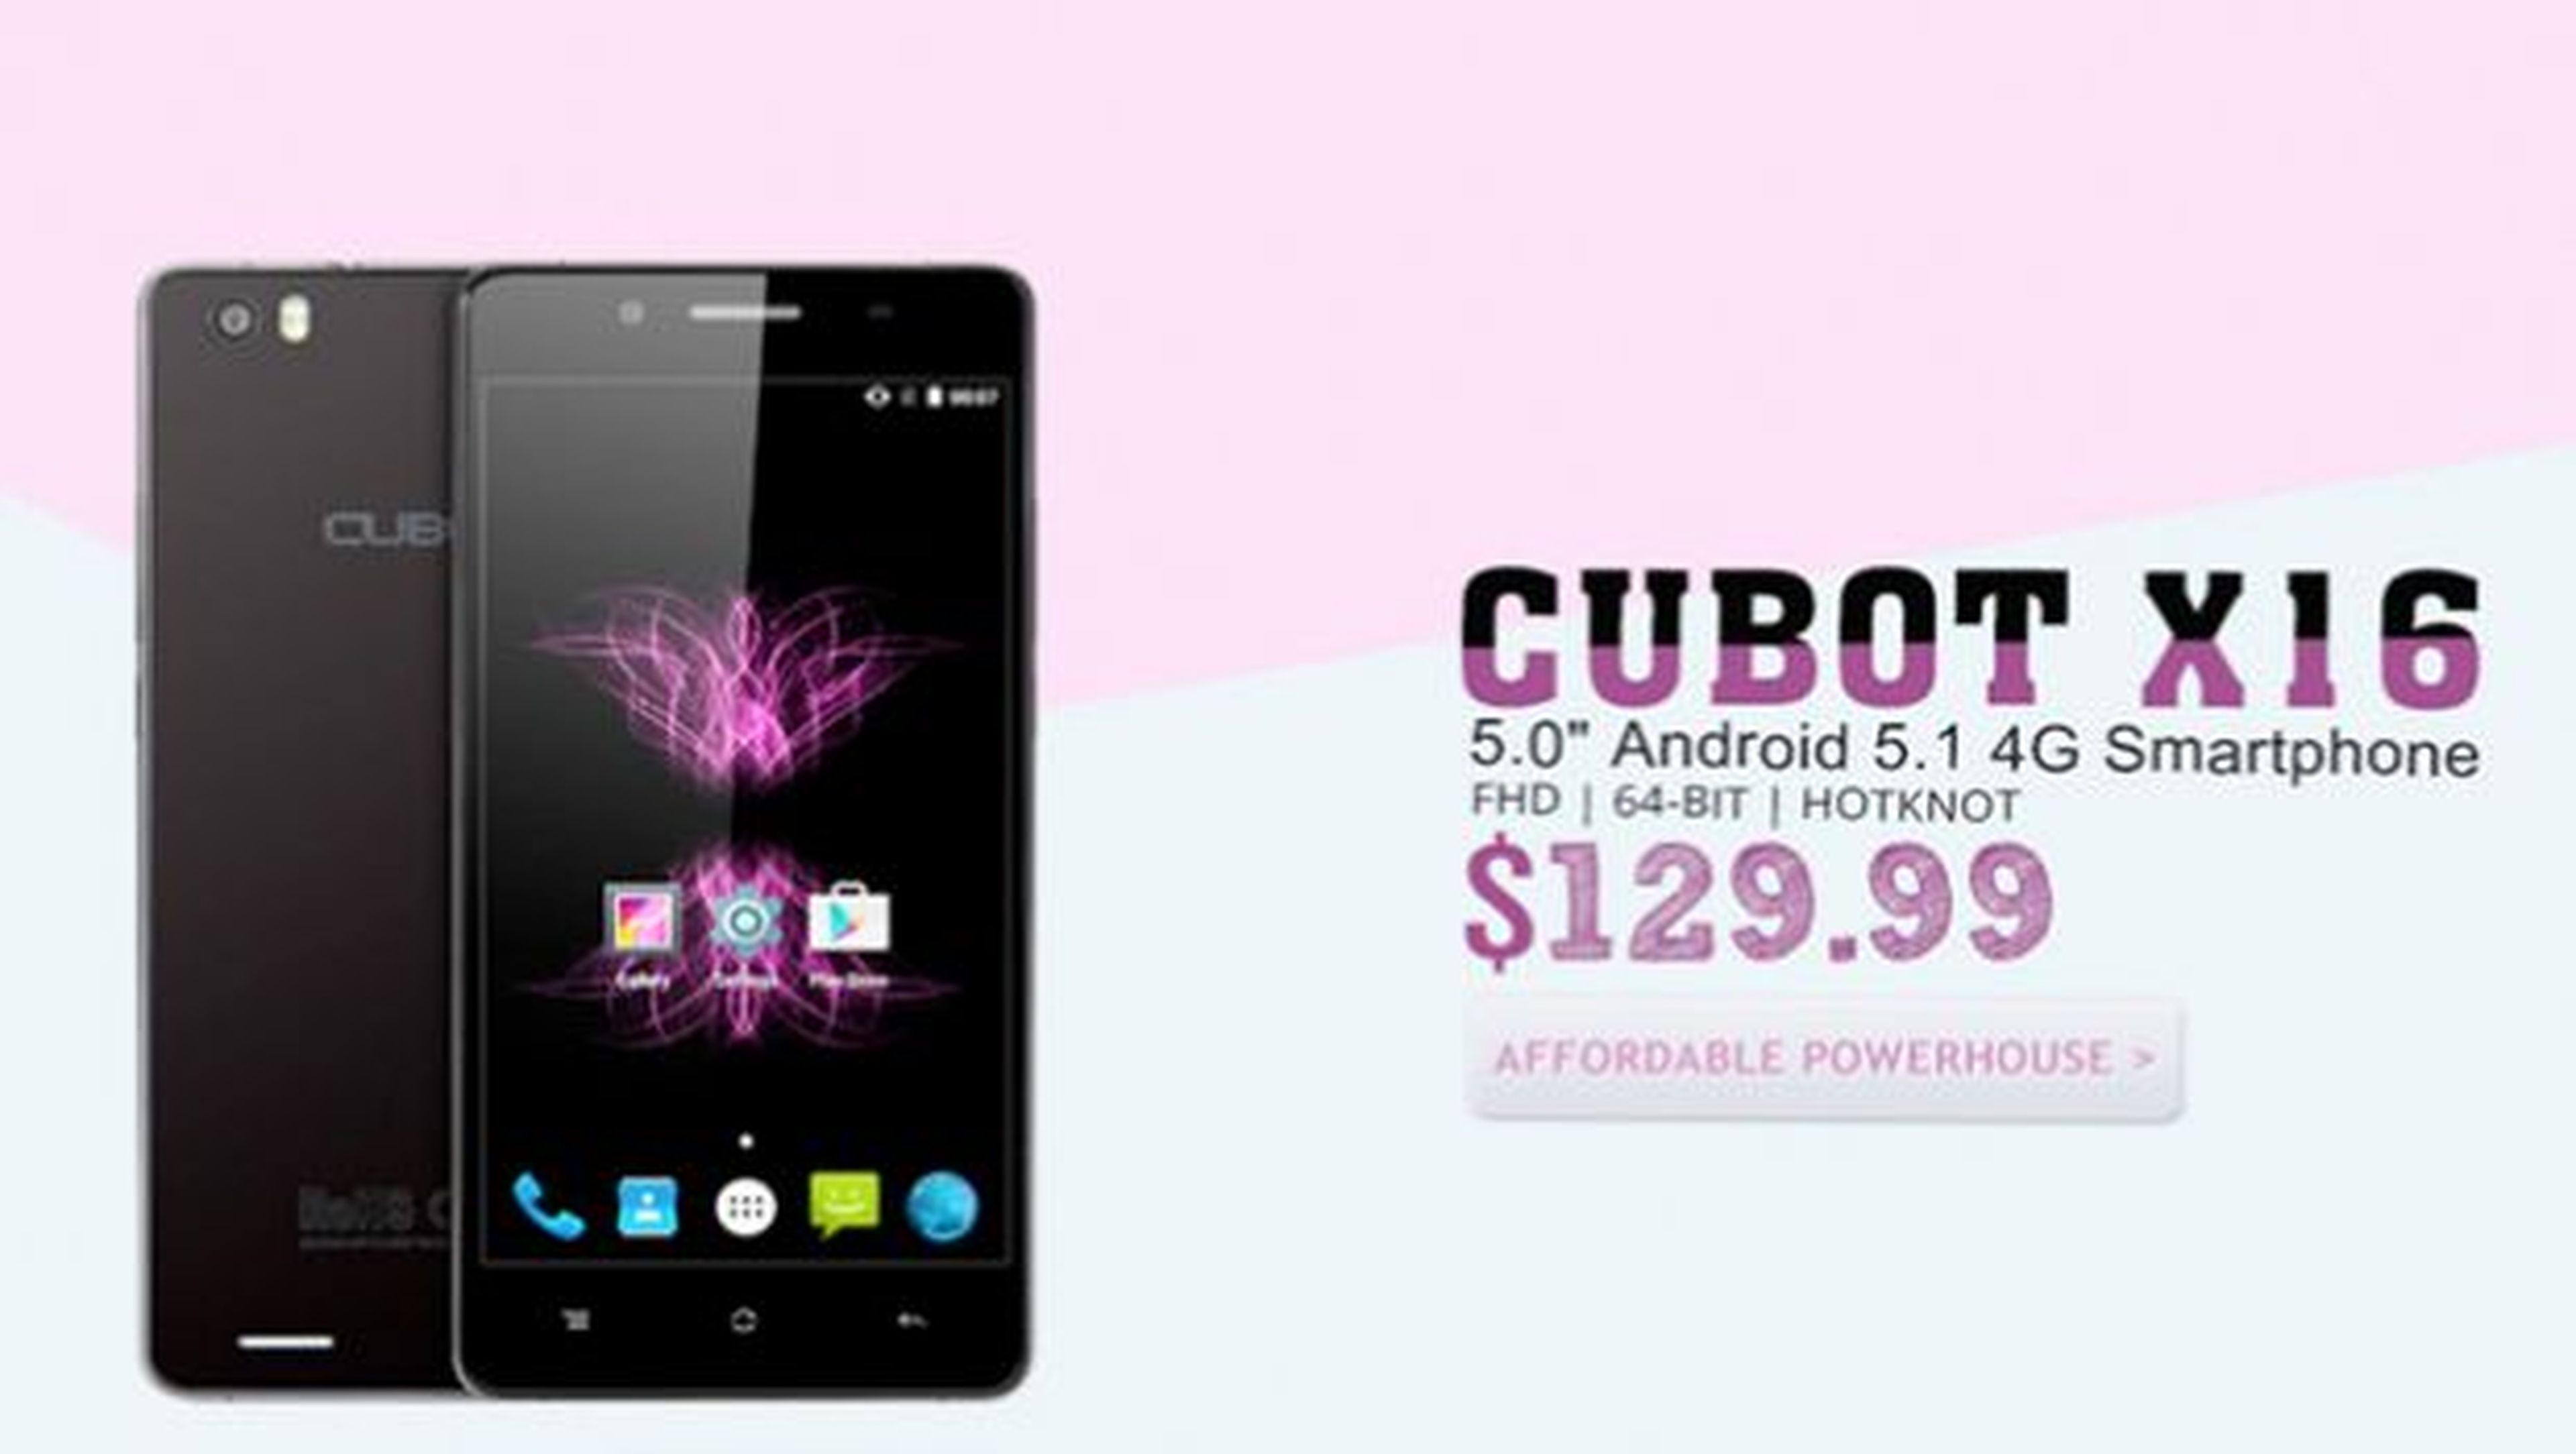 El Cubot X16 es un smartphone chino de gama media muy barato y con buenas prestaciones